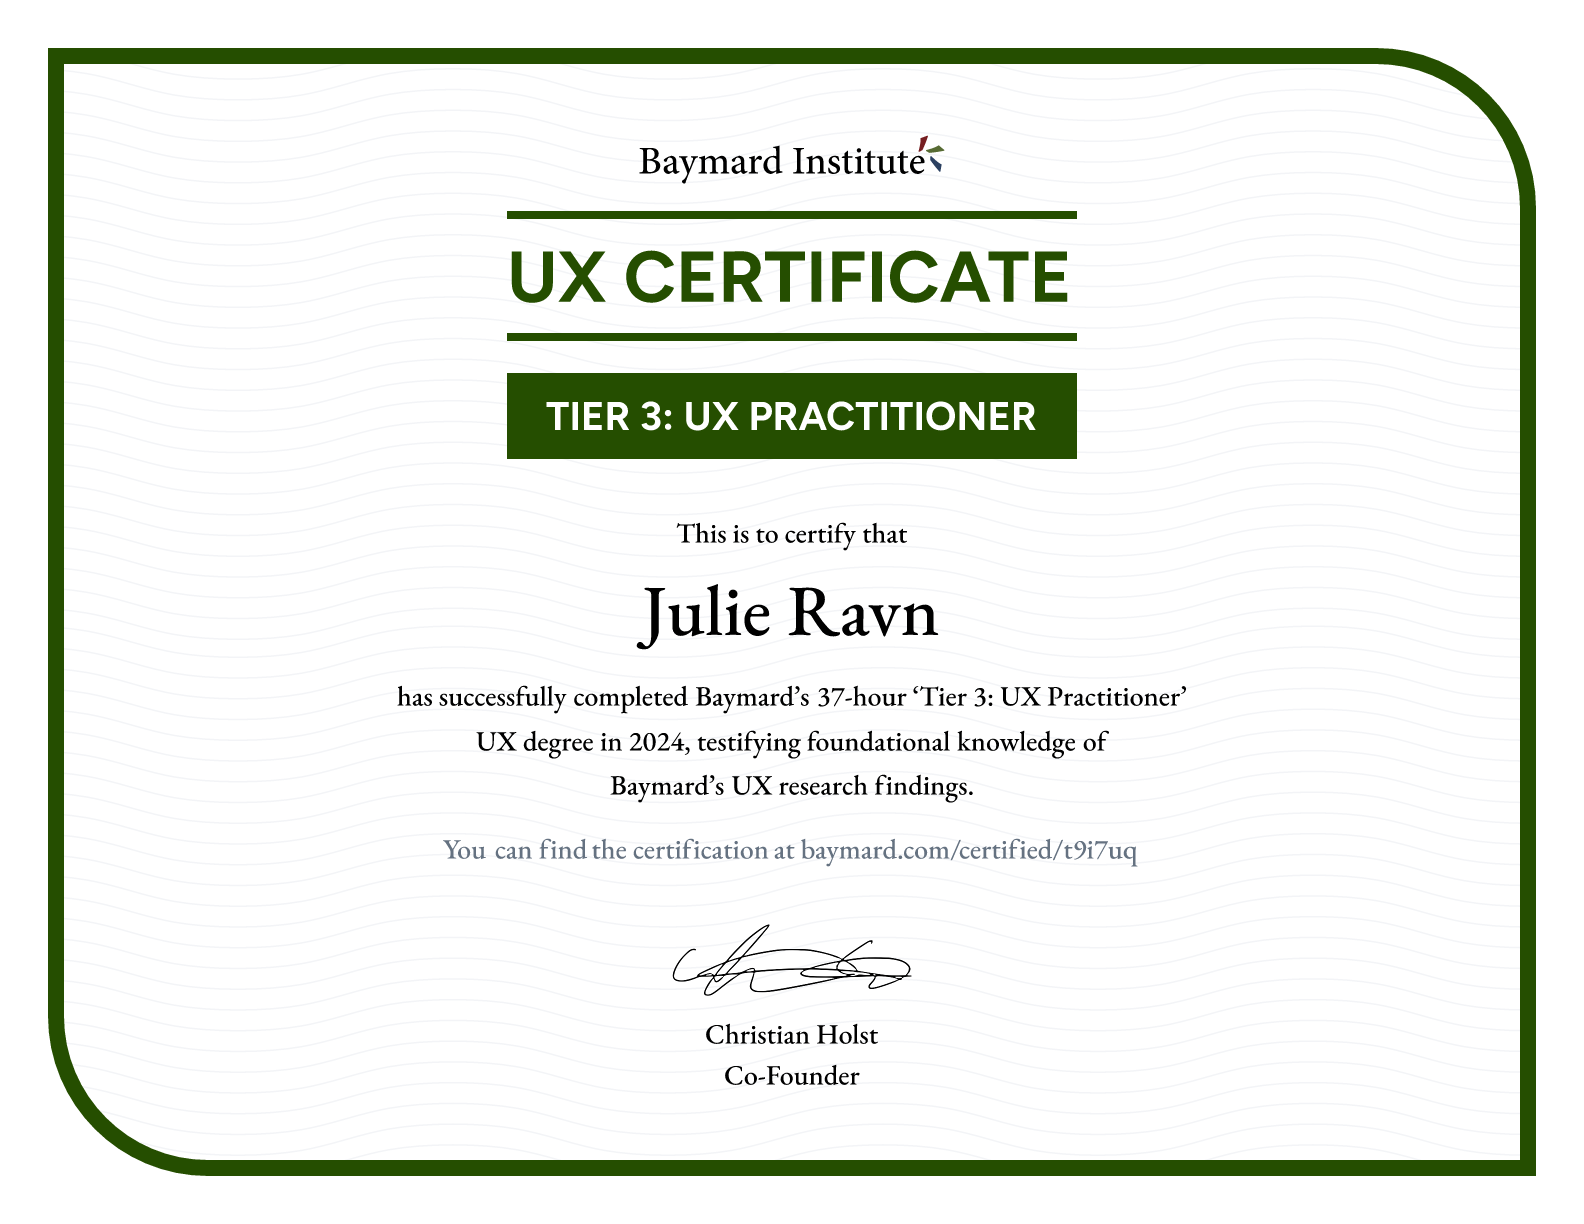 Julie Ravn’s certificate